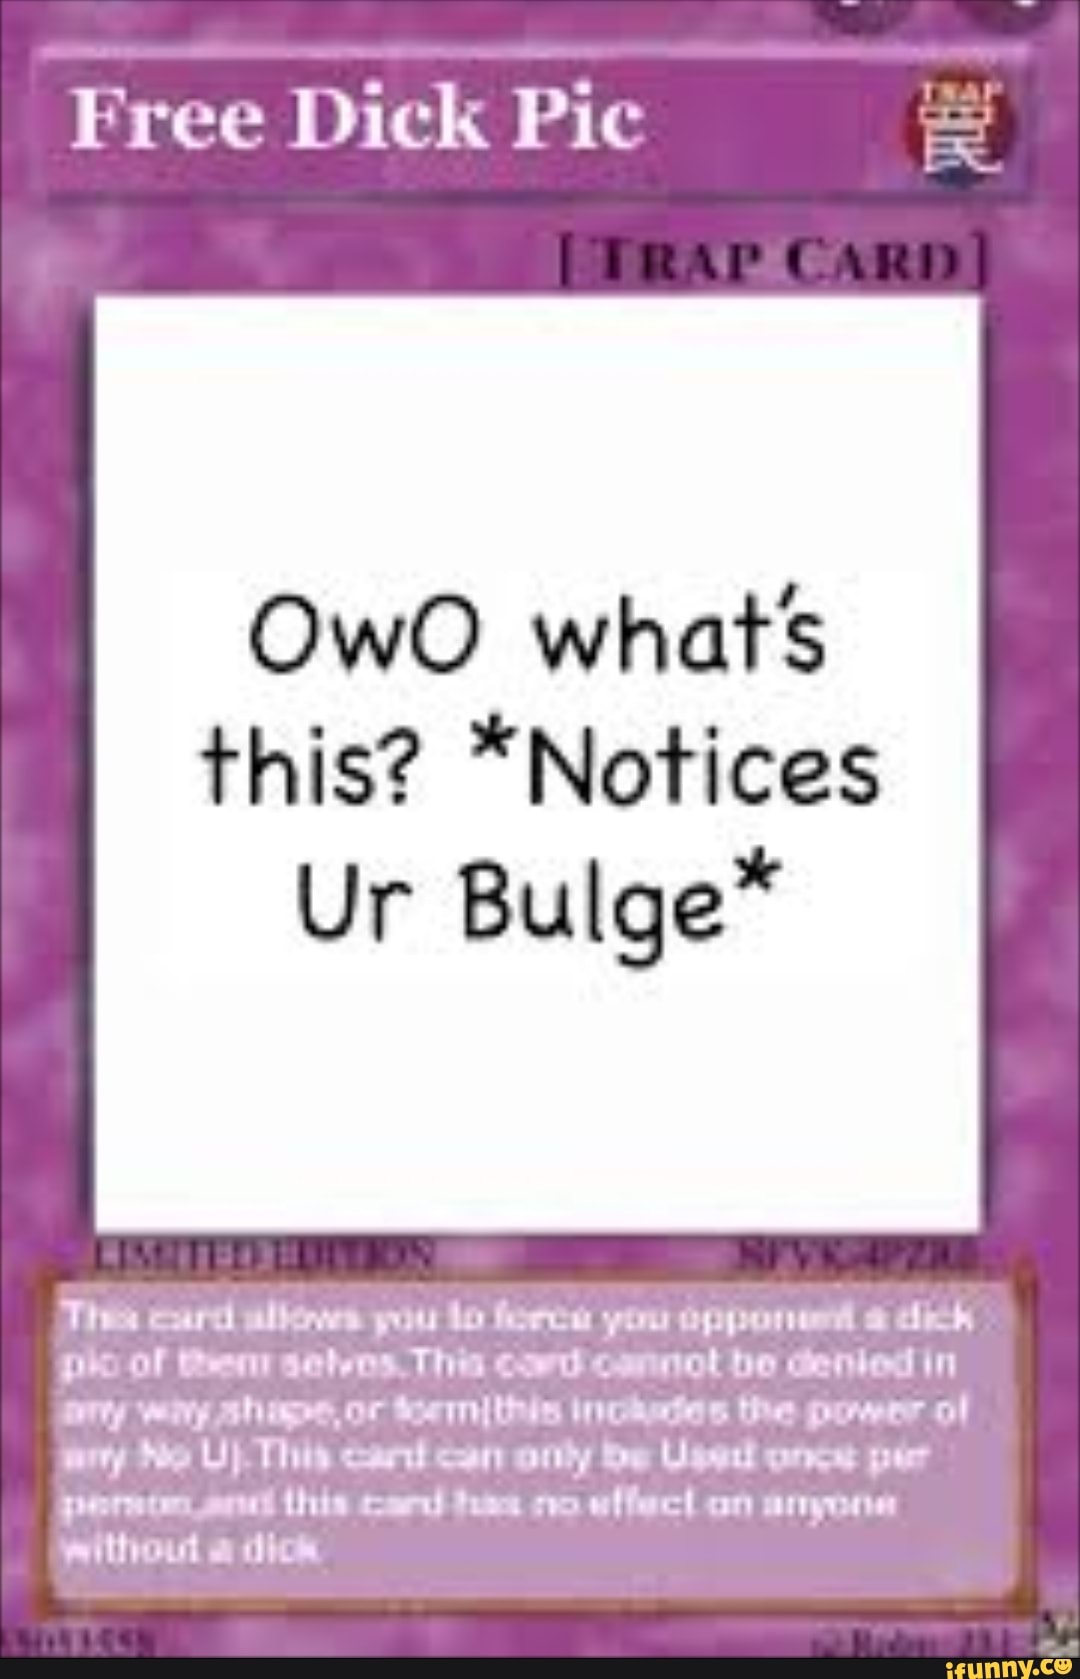 Pou Meme | Greeting Card